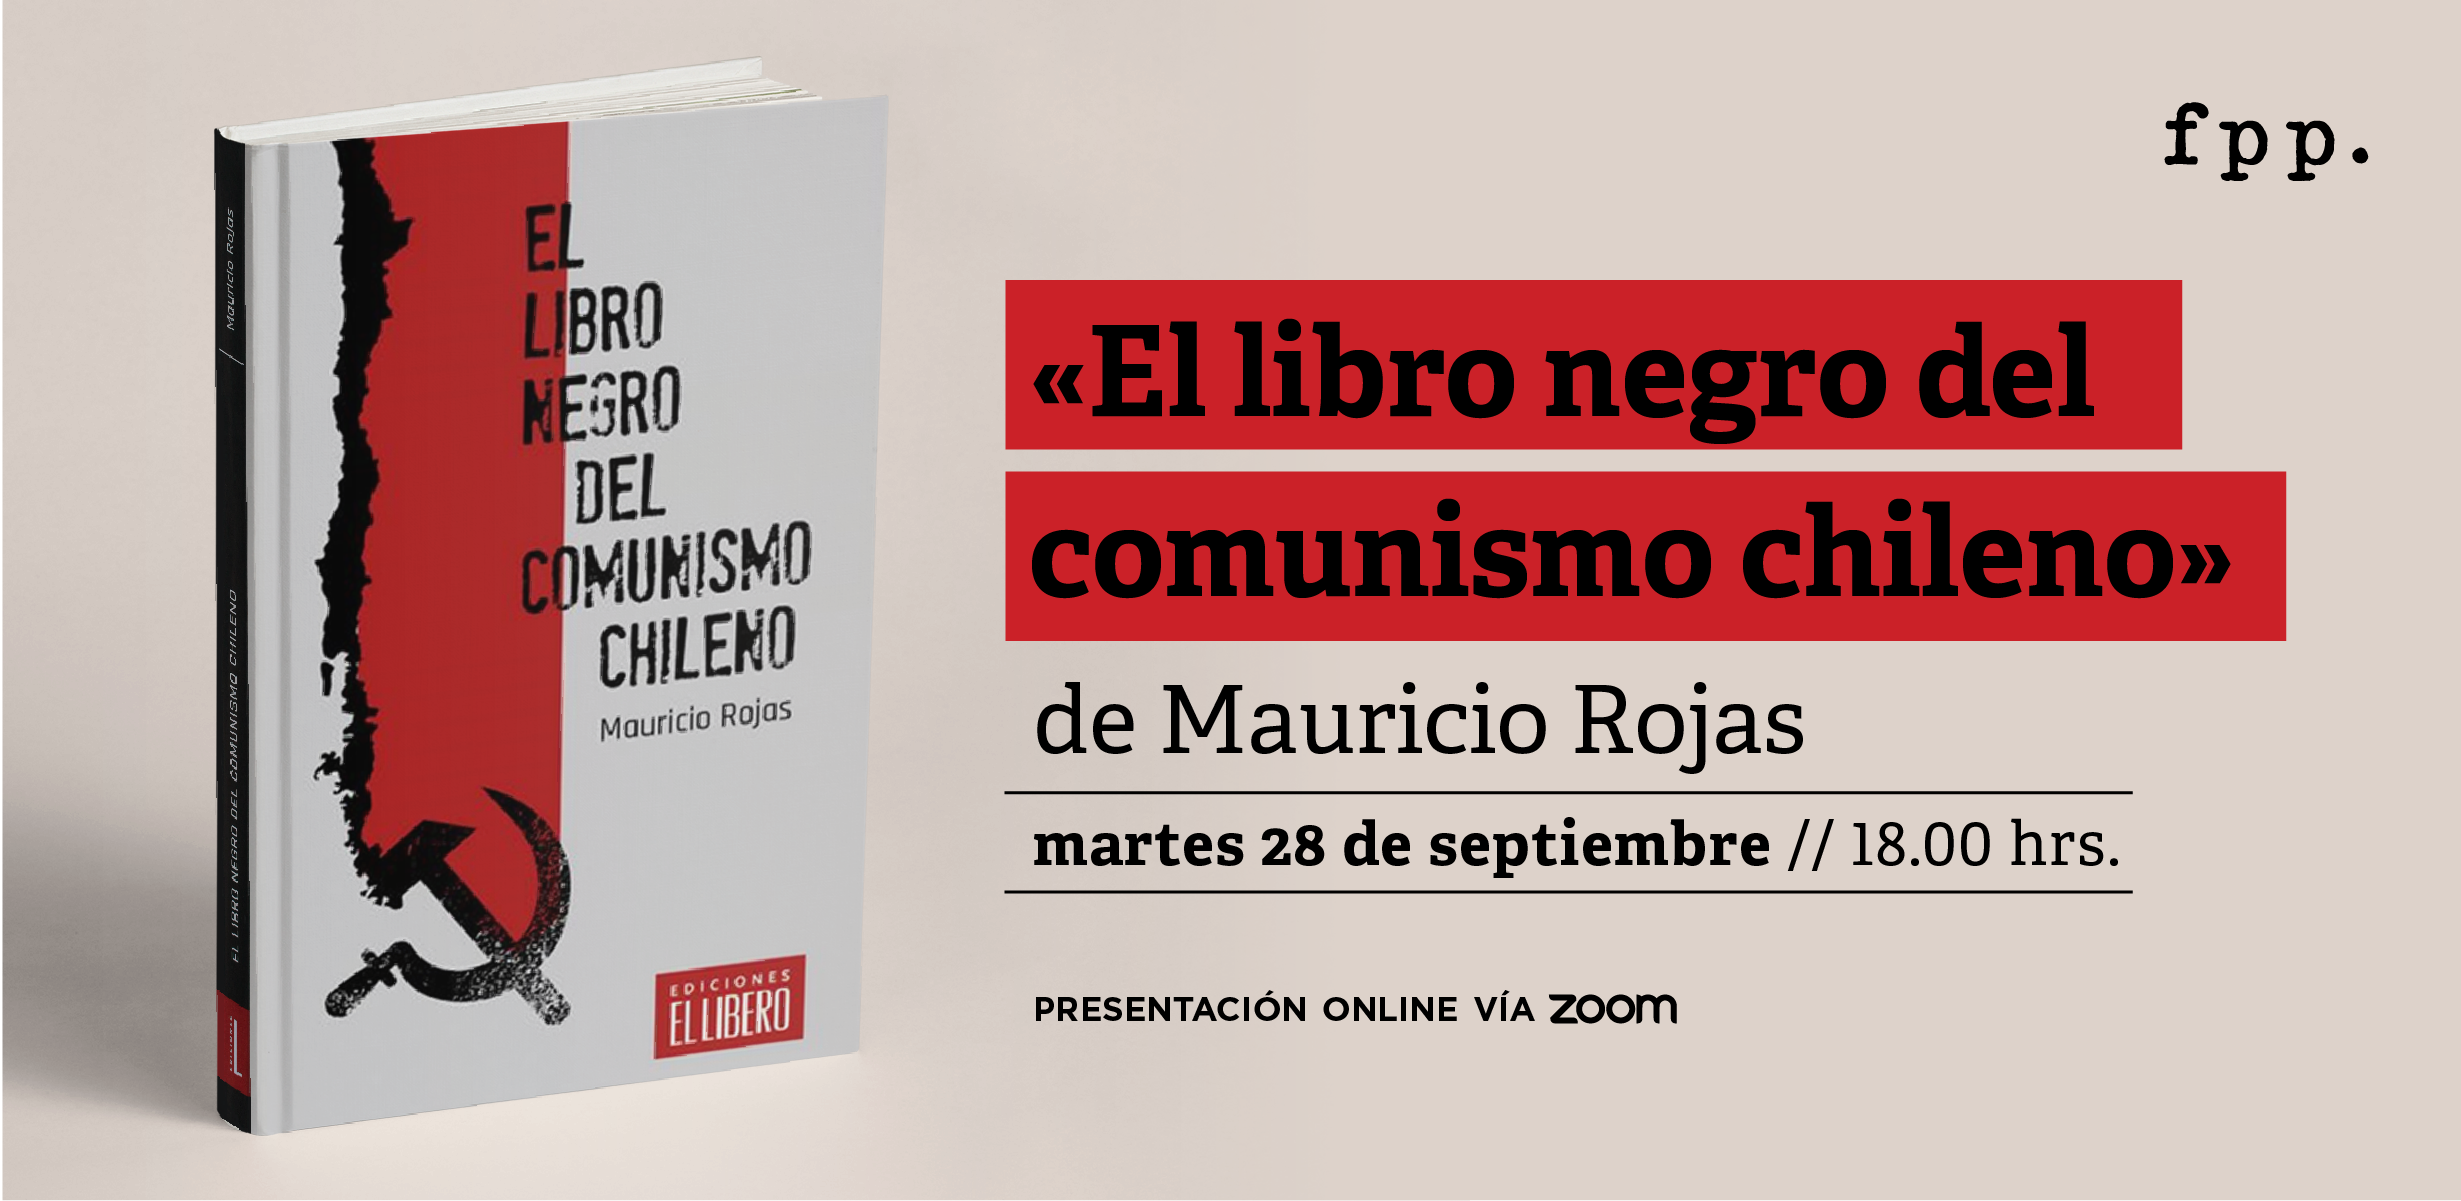 Presentación del libro “El libro negro del comunismo chileno” de Mauricio Rojas